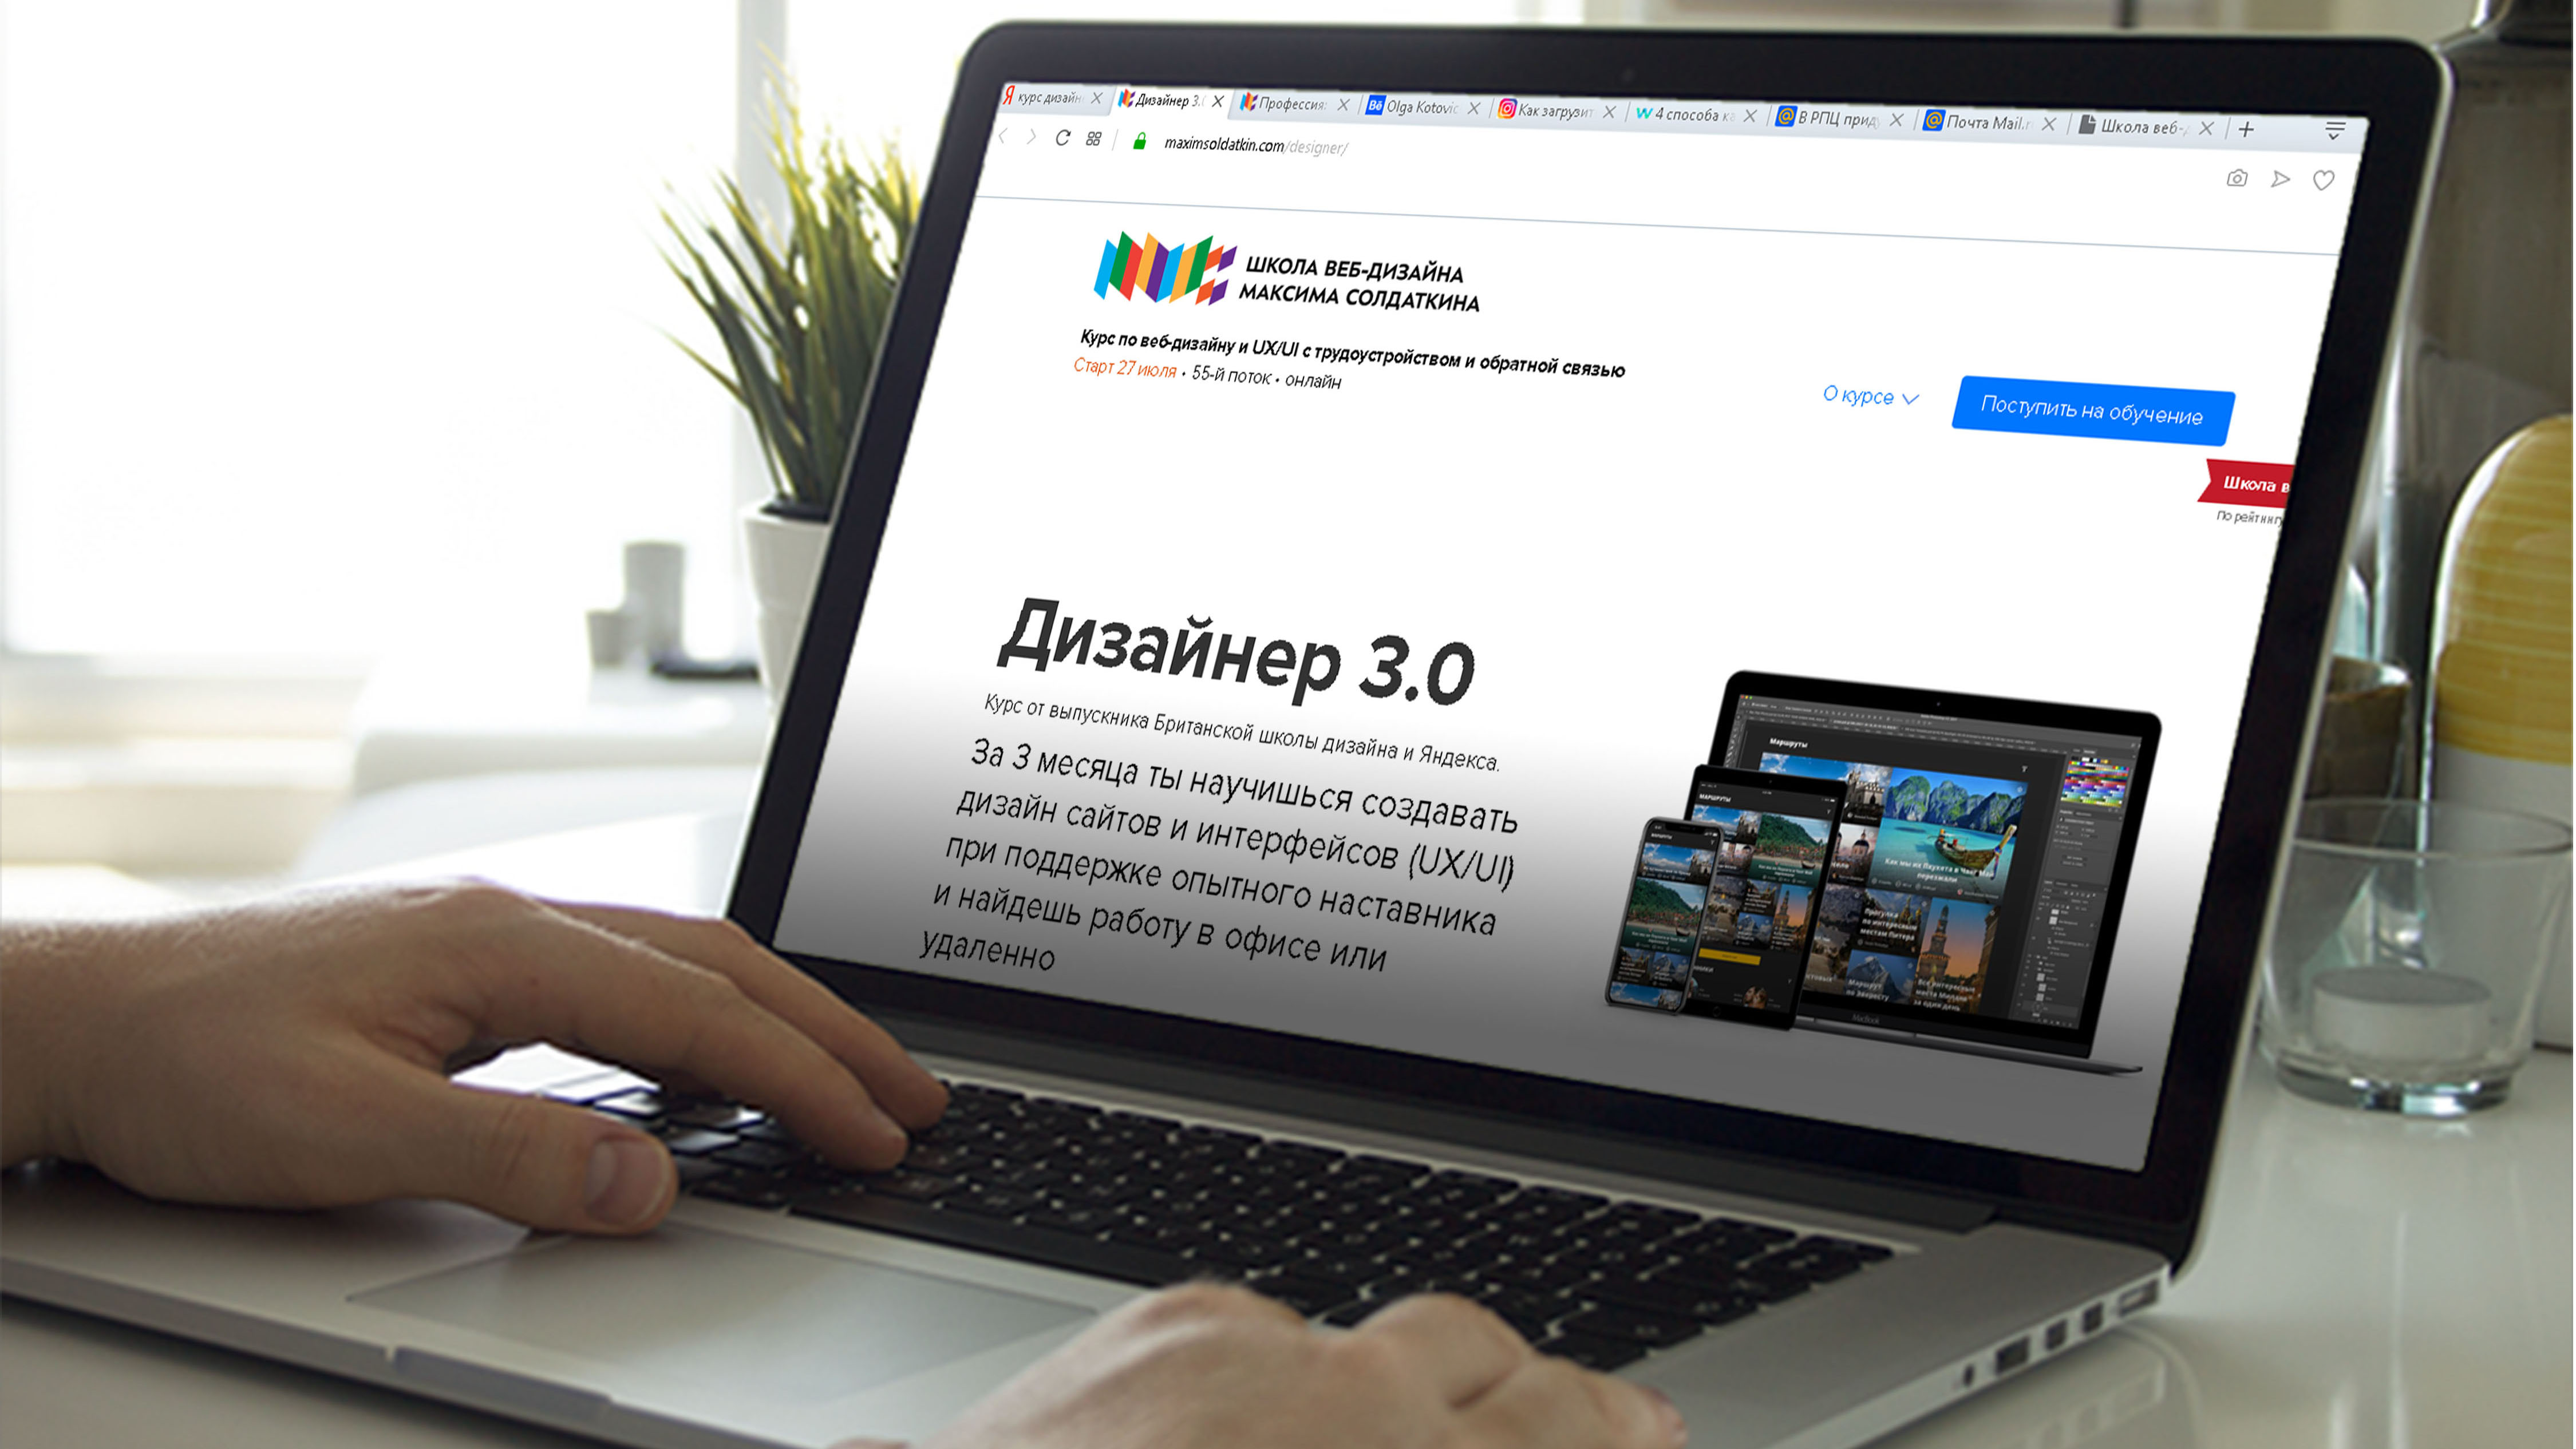 Школа веб-дизайна Максима Солдаткина.